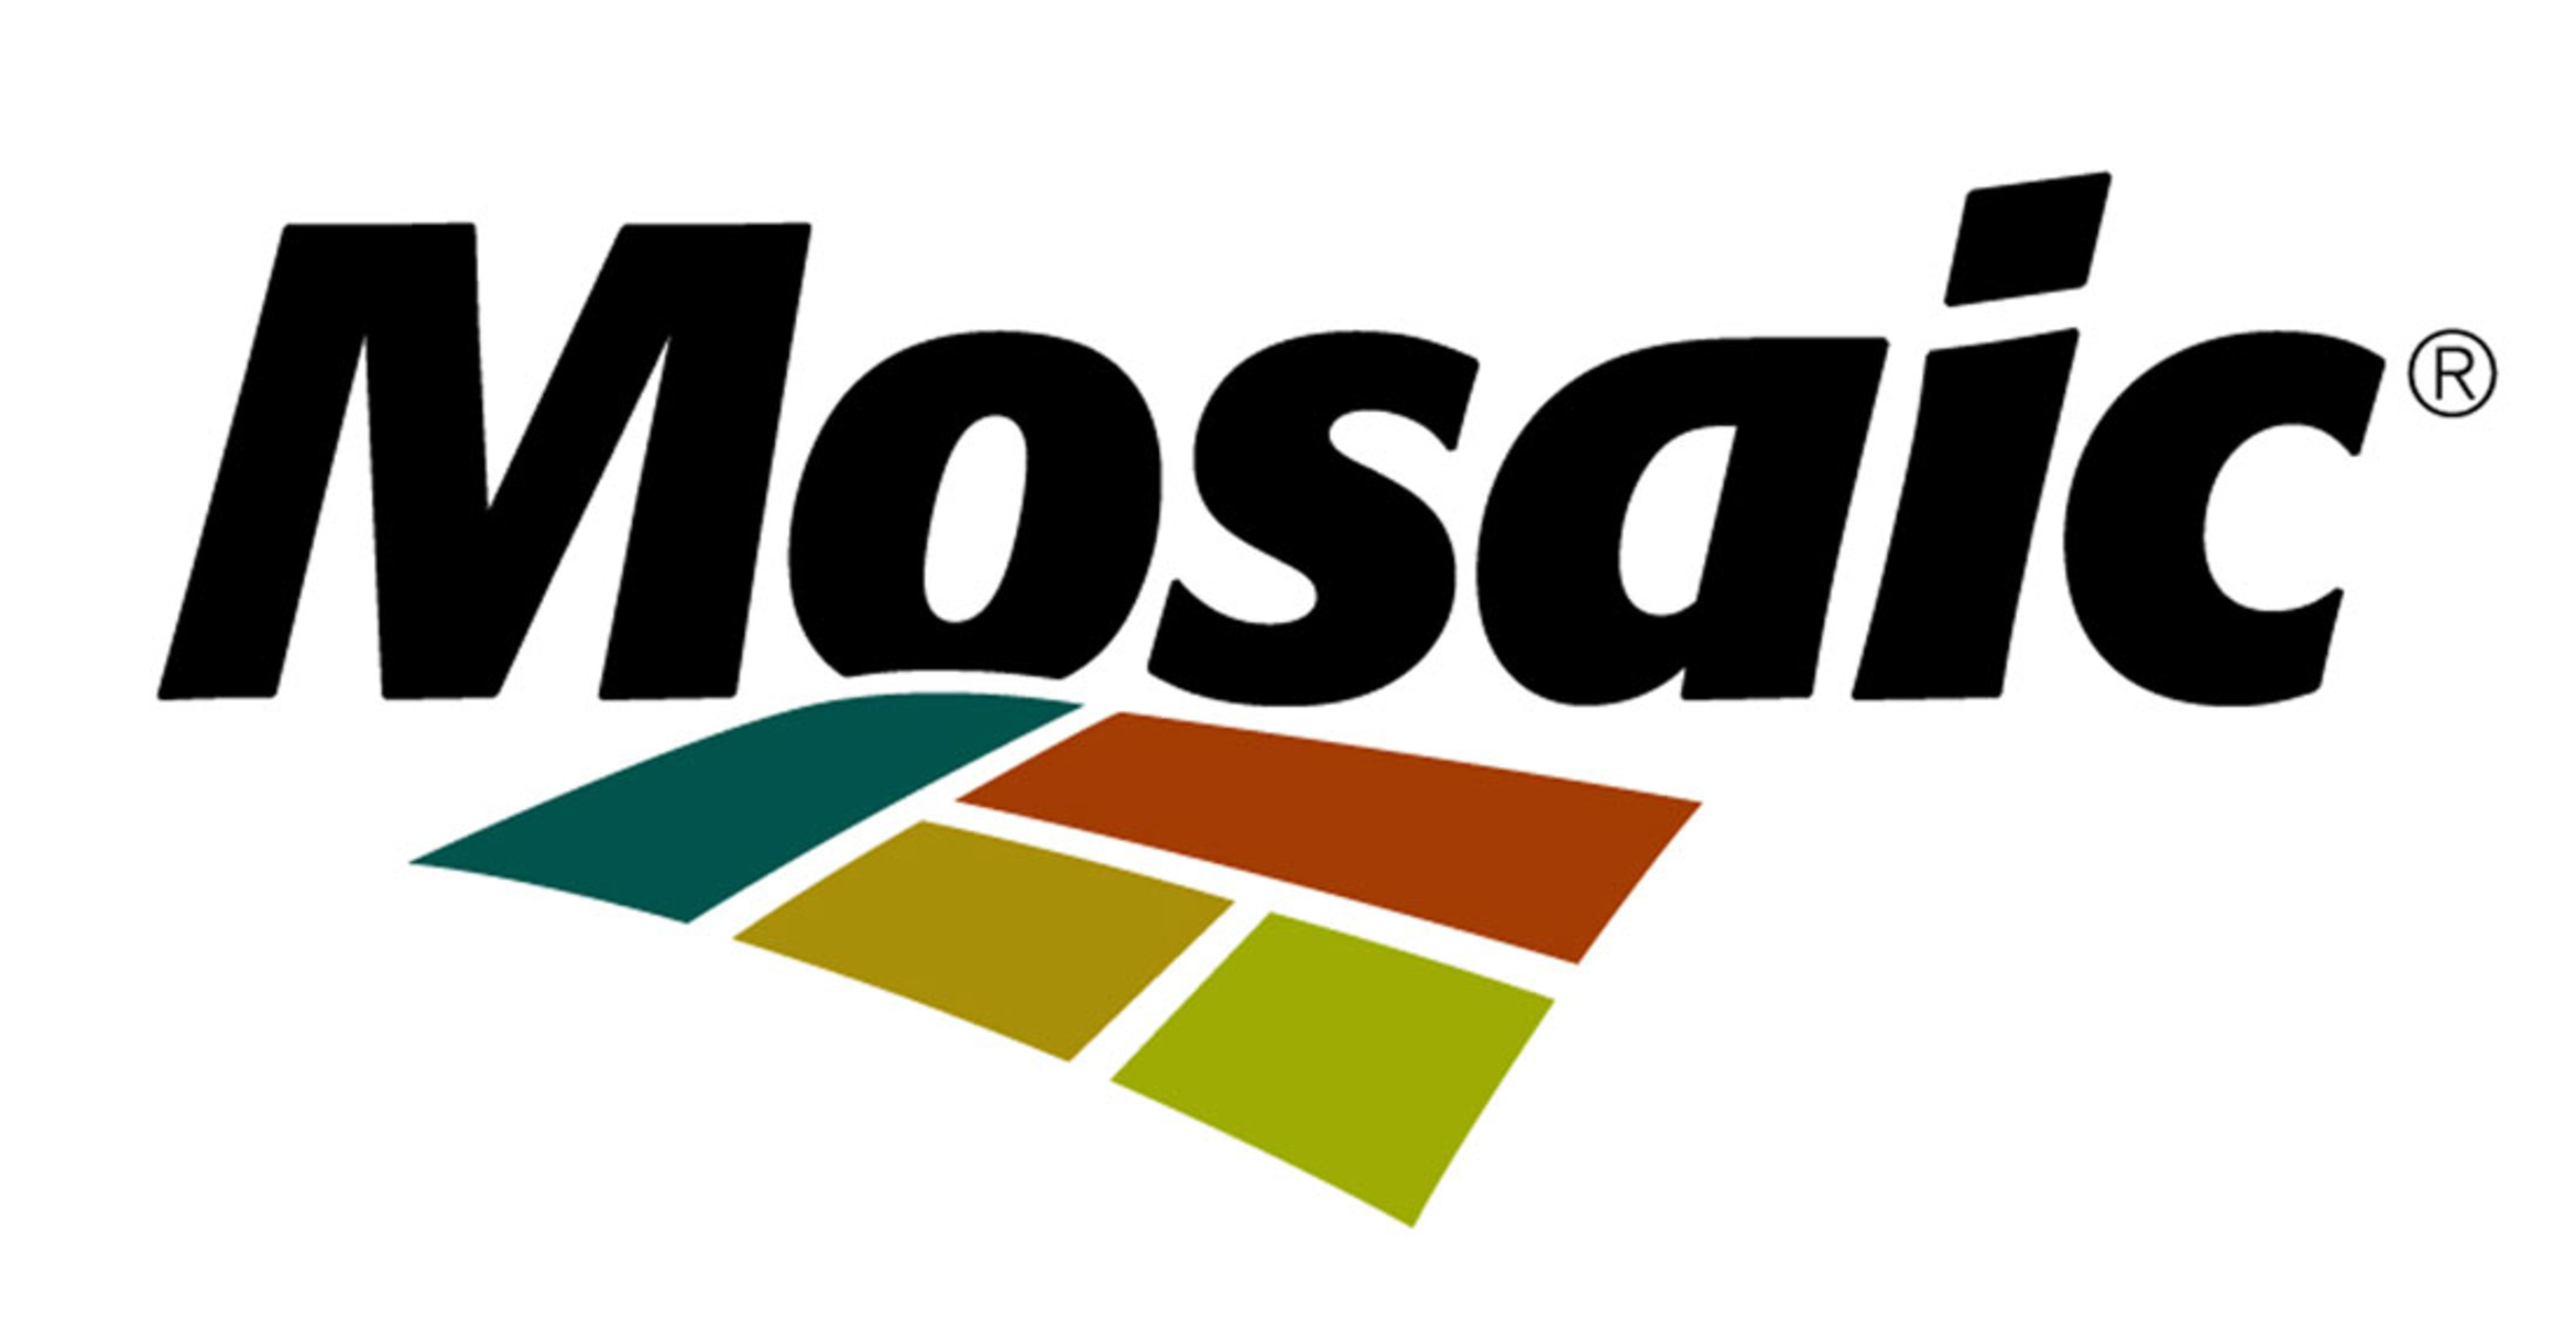 The Mosaic Company logo.